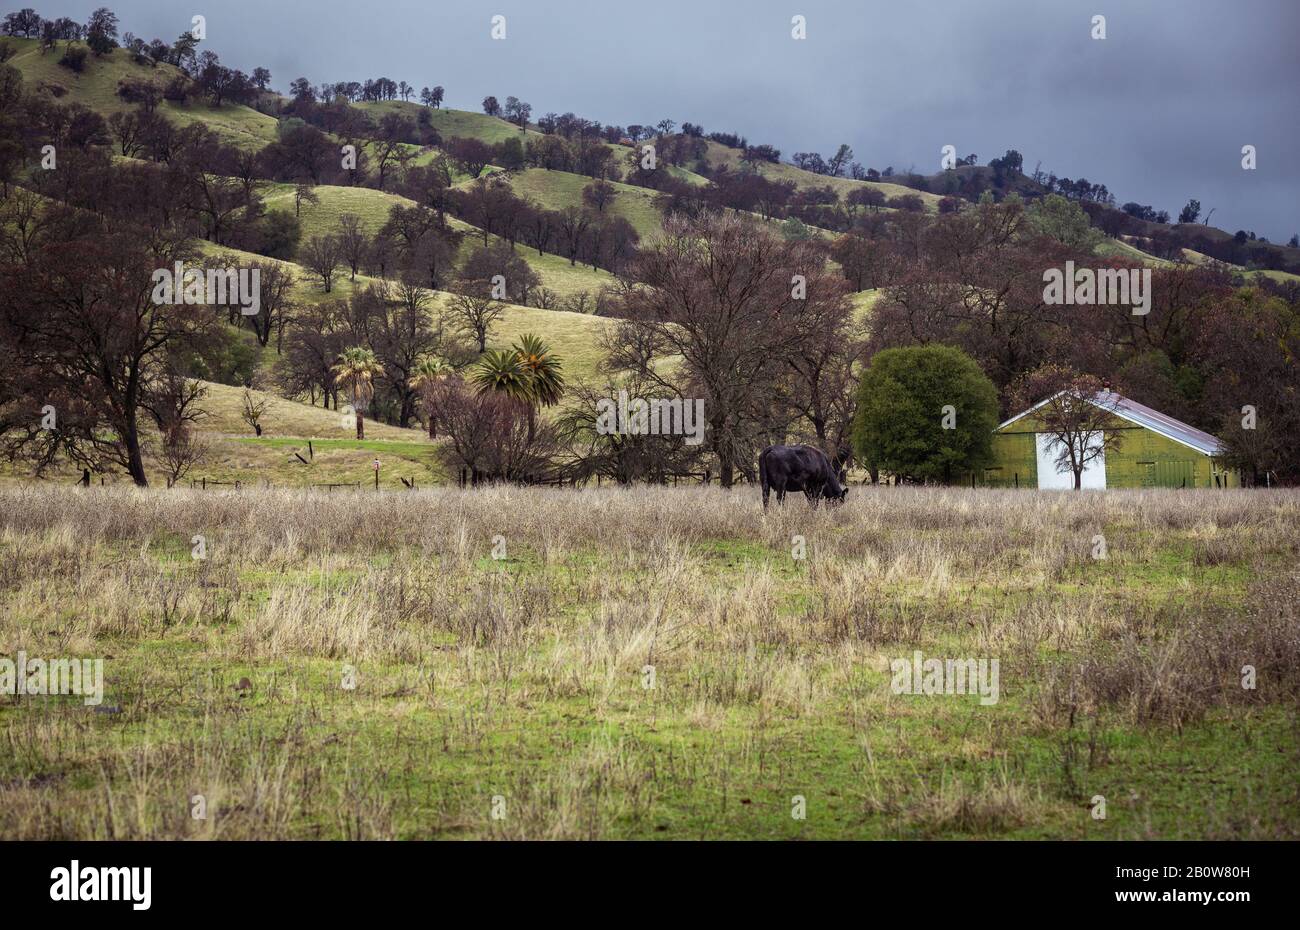 Eine Winterszene in Nordkalifornien, in der das Gras nach einem trockenen Sommer und dringend benötigtem Regen von beige zu grün wird. Einsame Kuh Und Grünbarn Stockfoto